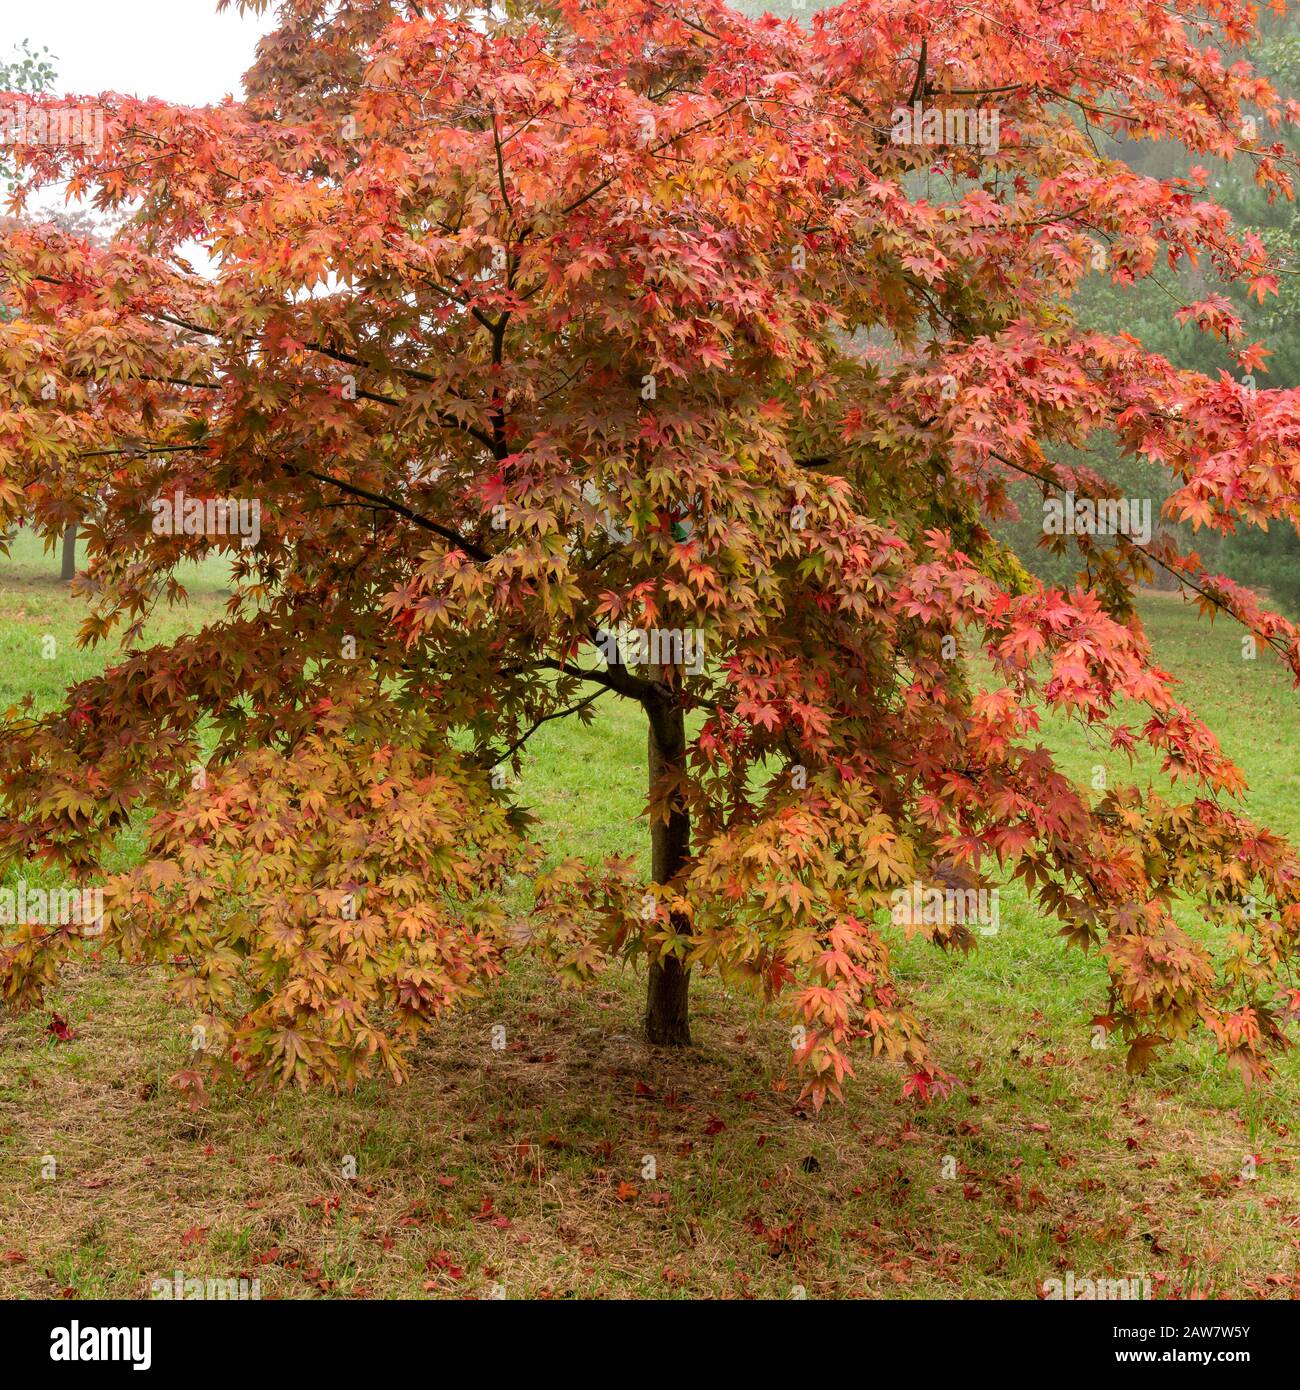 Acer arbres en automne à Thorp perrow arboretum Banque D'Images